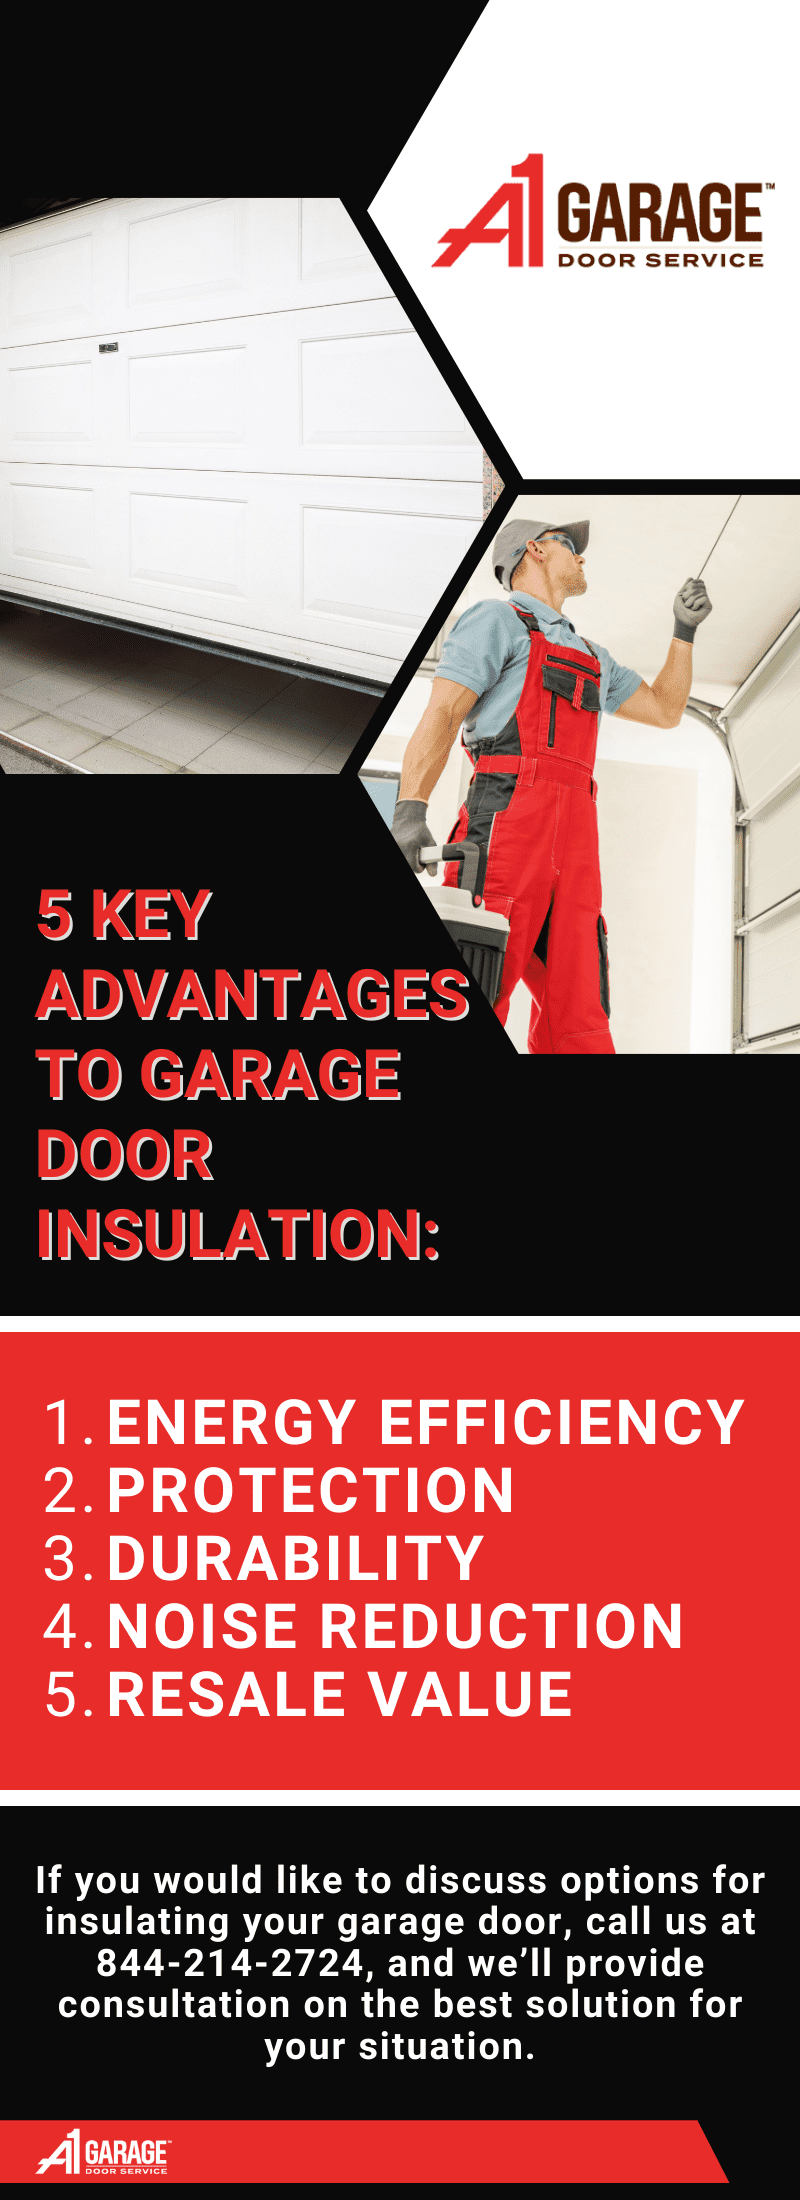 A1 Garage Door Does Insulating Garage Door Help infographic